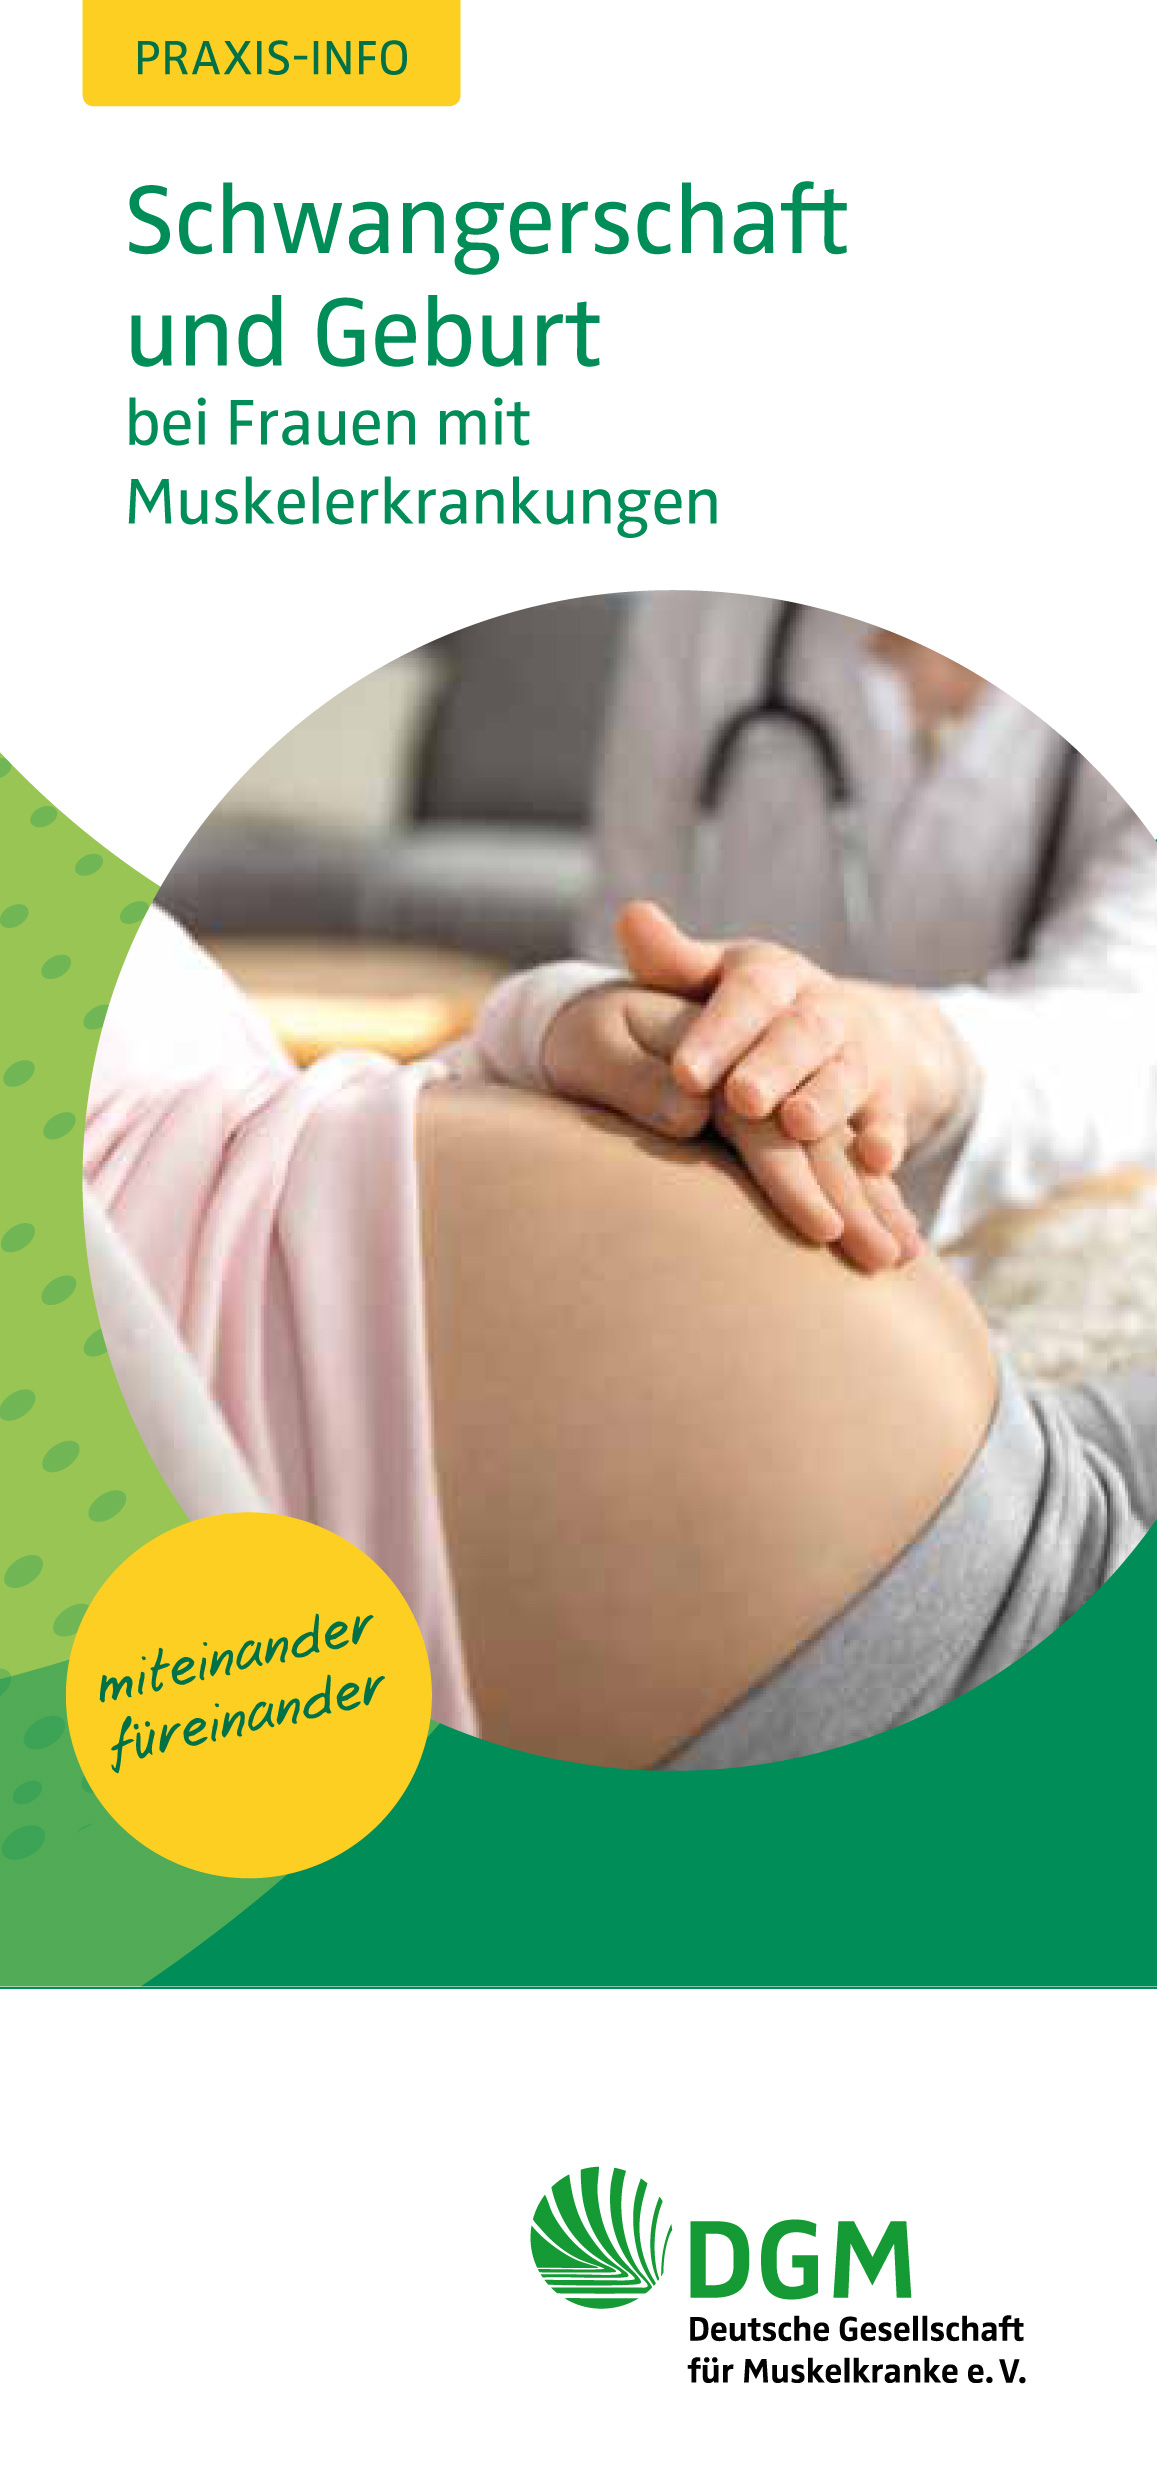 Praxis-Info: Schwangerschaft und Geburt bei Frauen mit Muskelerkrankung